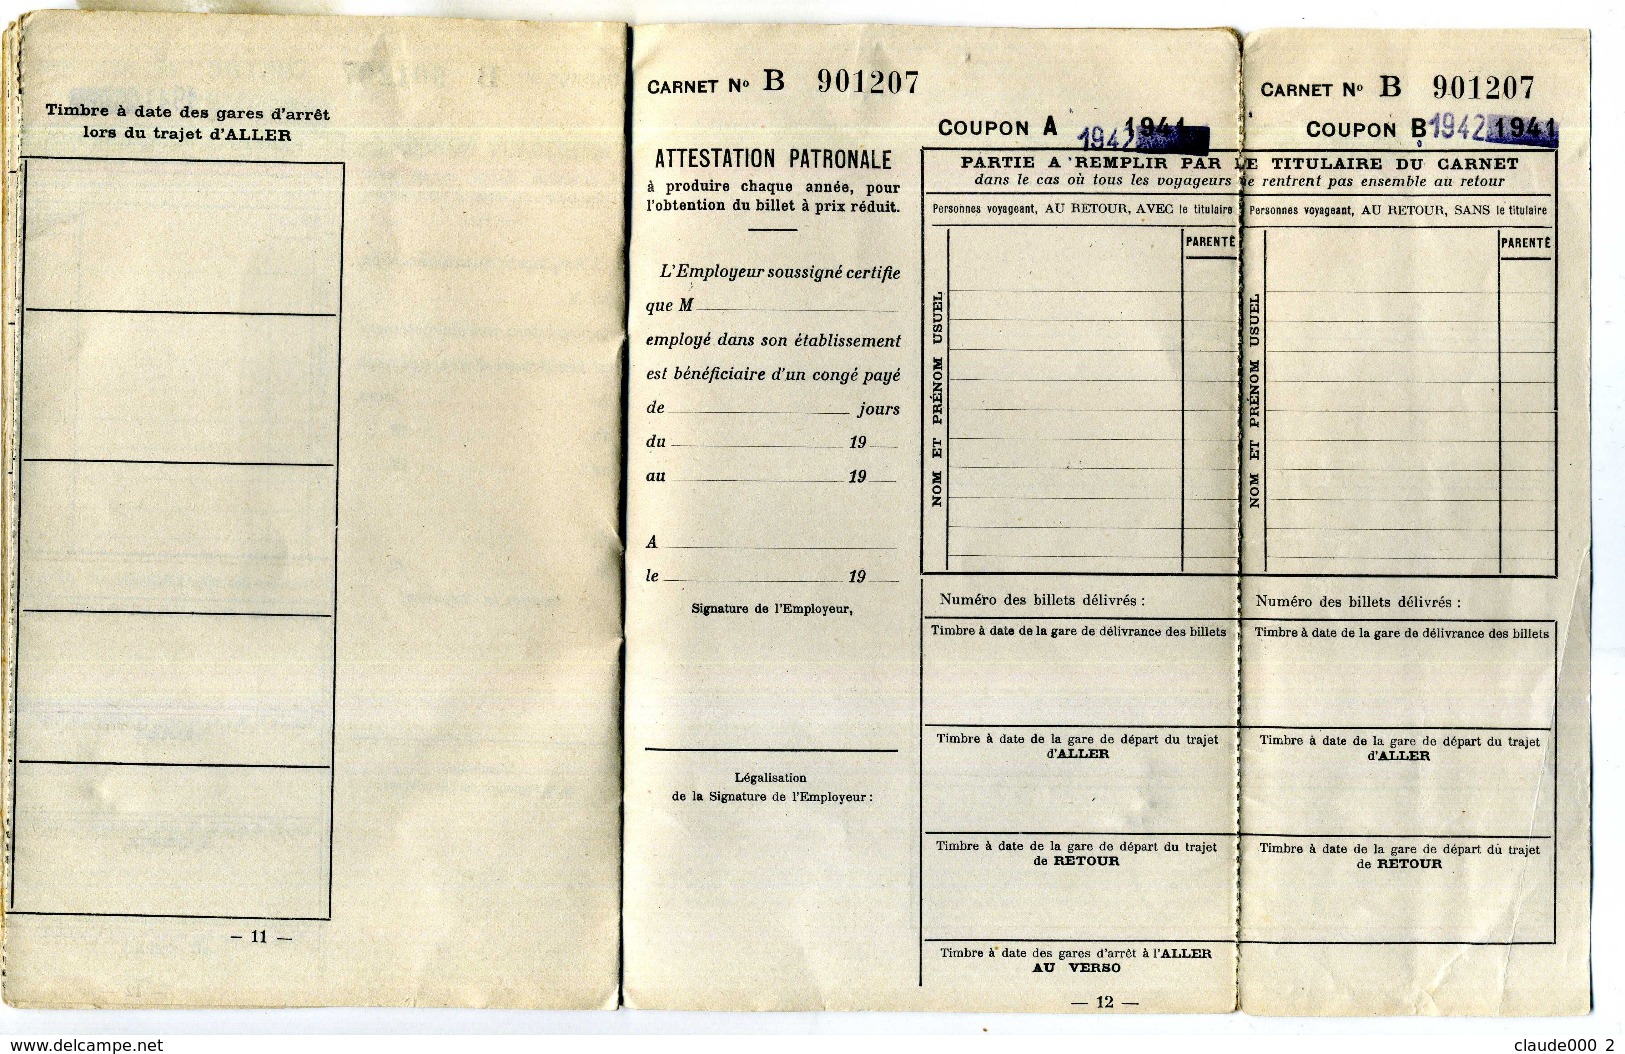 CARNET BILLETS POPULAIRES DE CONGE ANNUEL de Mr BERNARD Octave-Joseph né le 22/11/1911